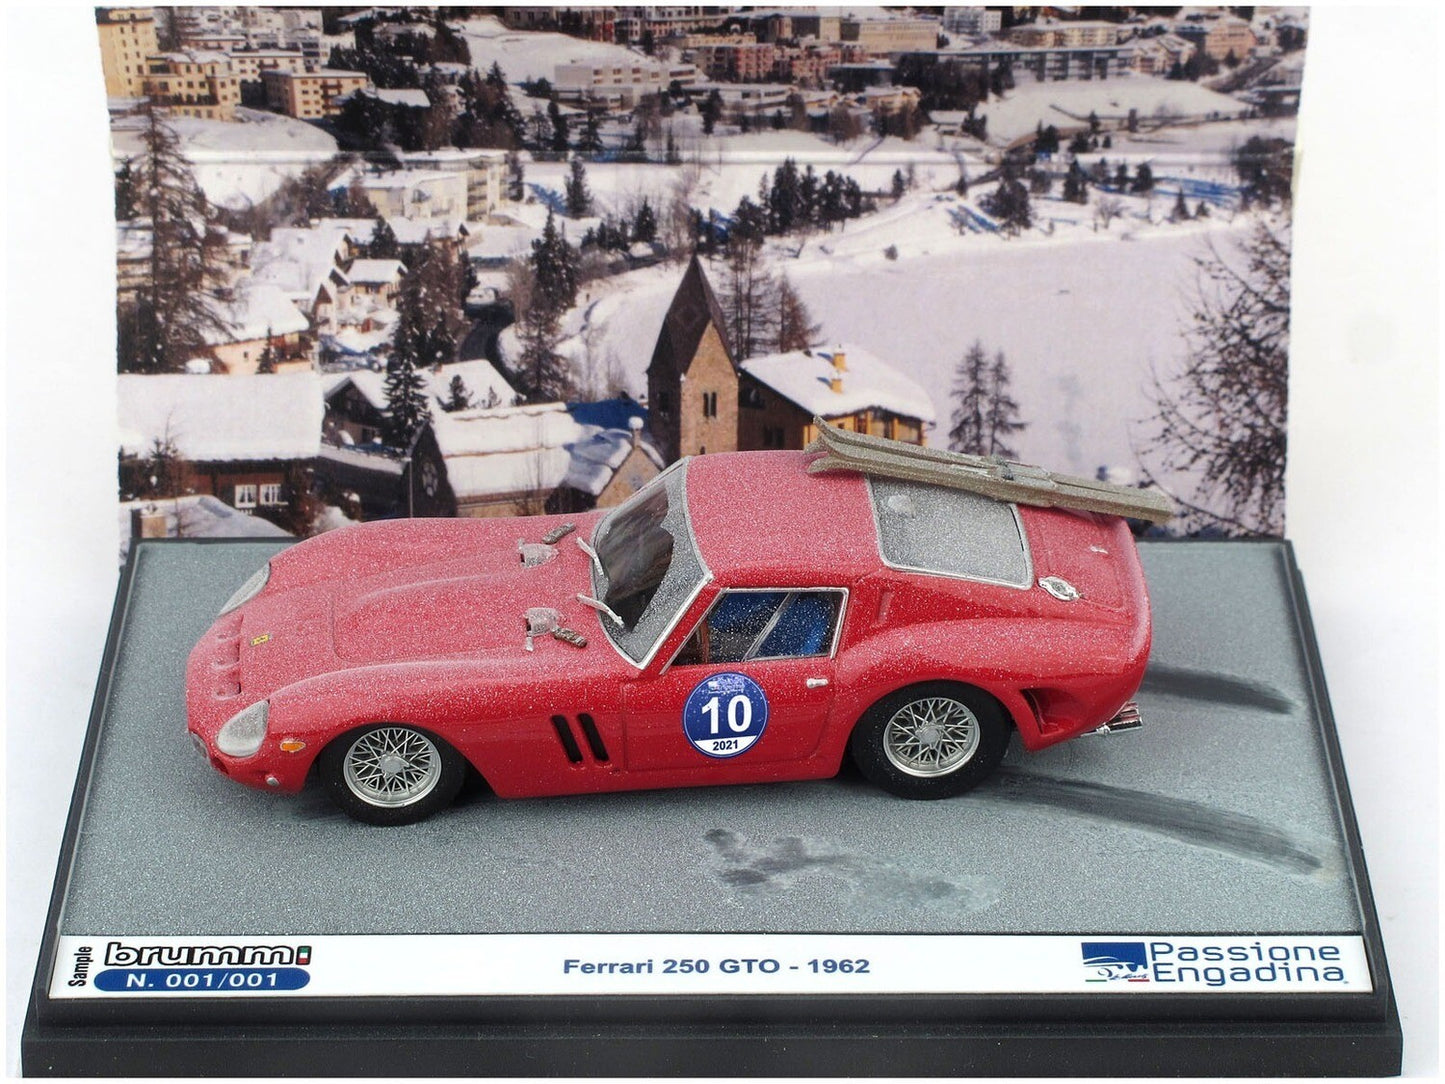 Ferrari 250 GTO 1962 - Passione Engadina Edition, 1:43